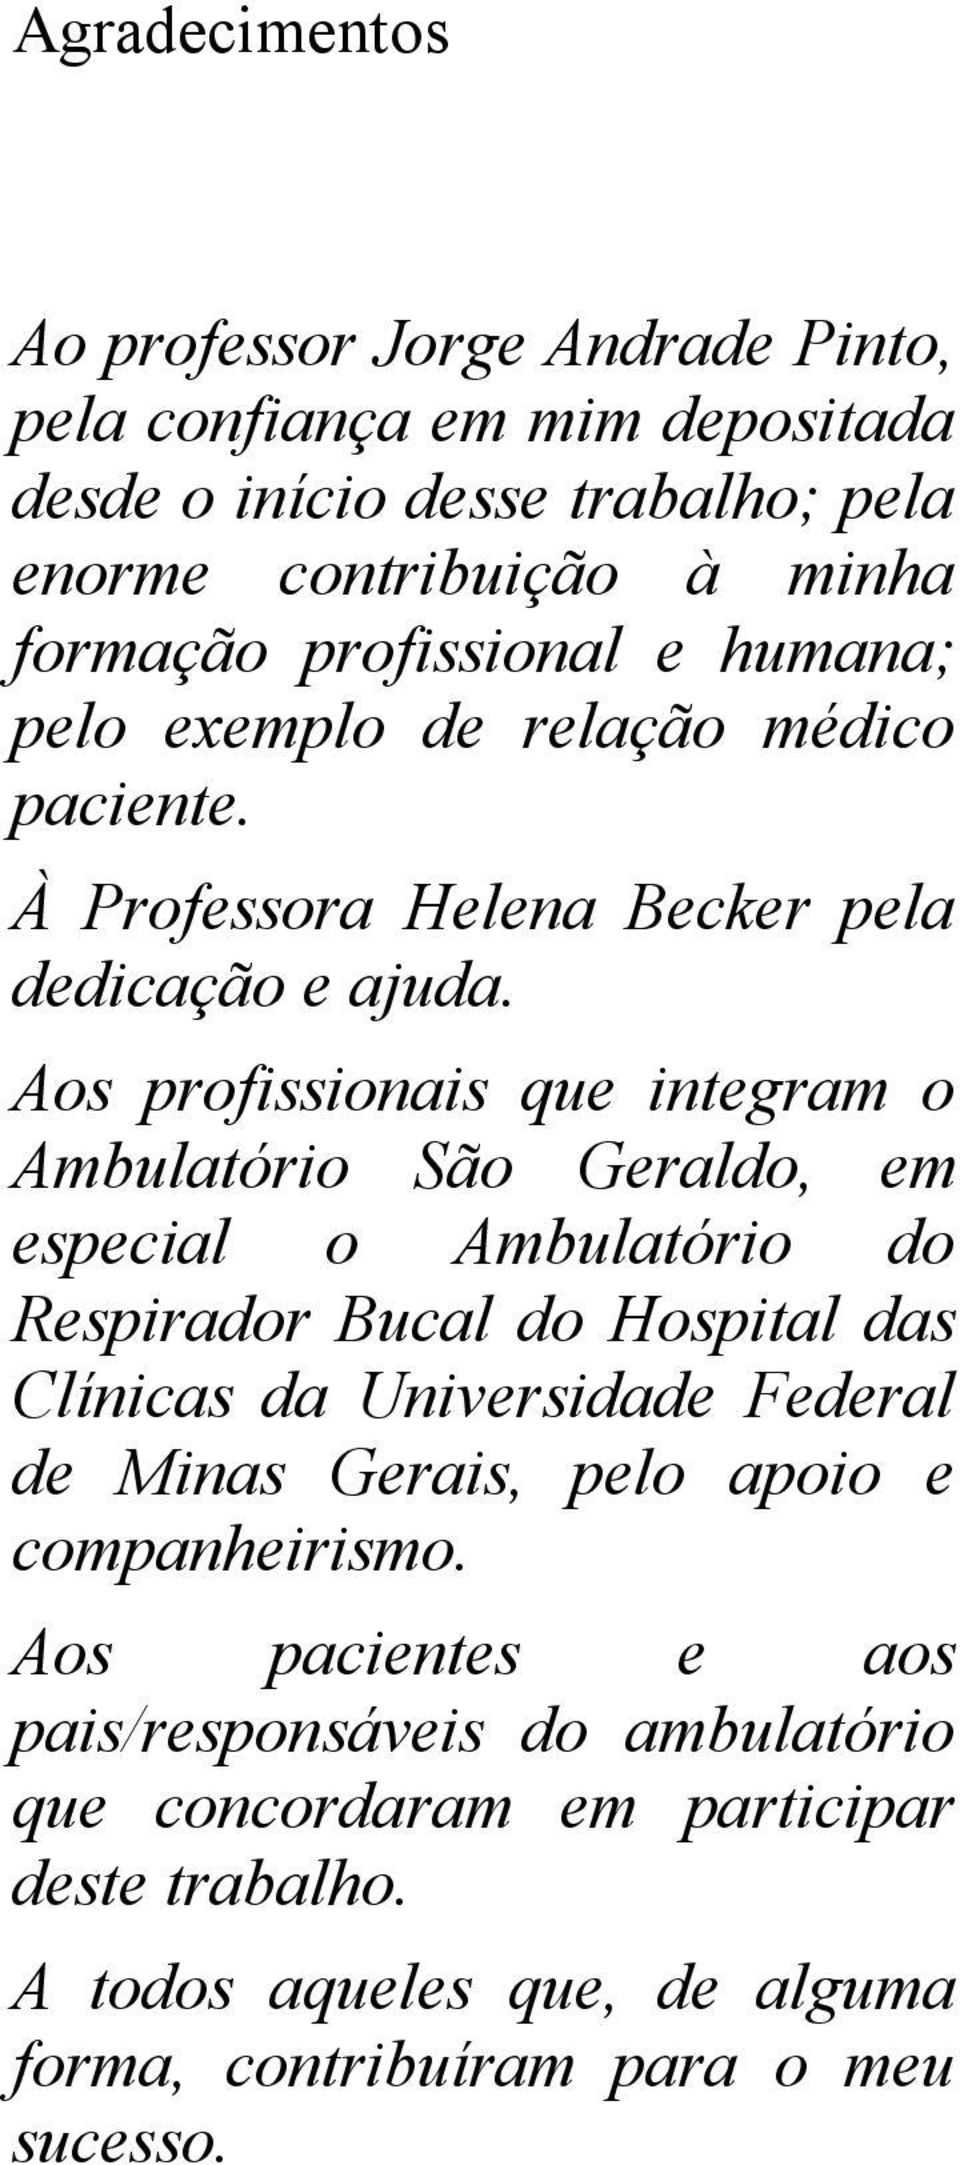 Aos profissionais que integram o Ambulatório São Geraldo, em especial o Ambulatório do Respirador Bucal do Hospital das Clínicas da Universidade Federal de